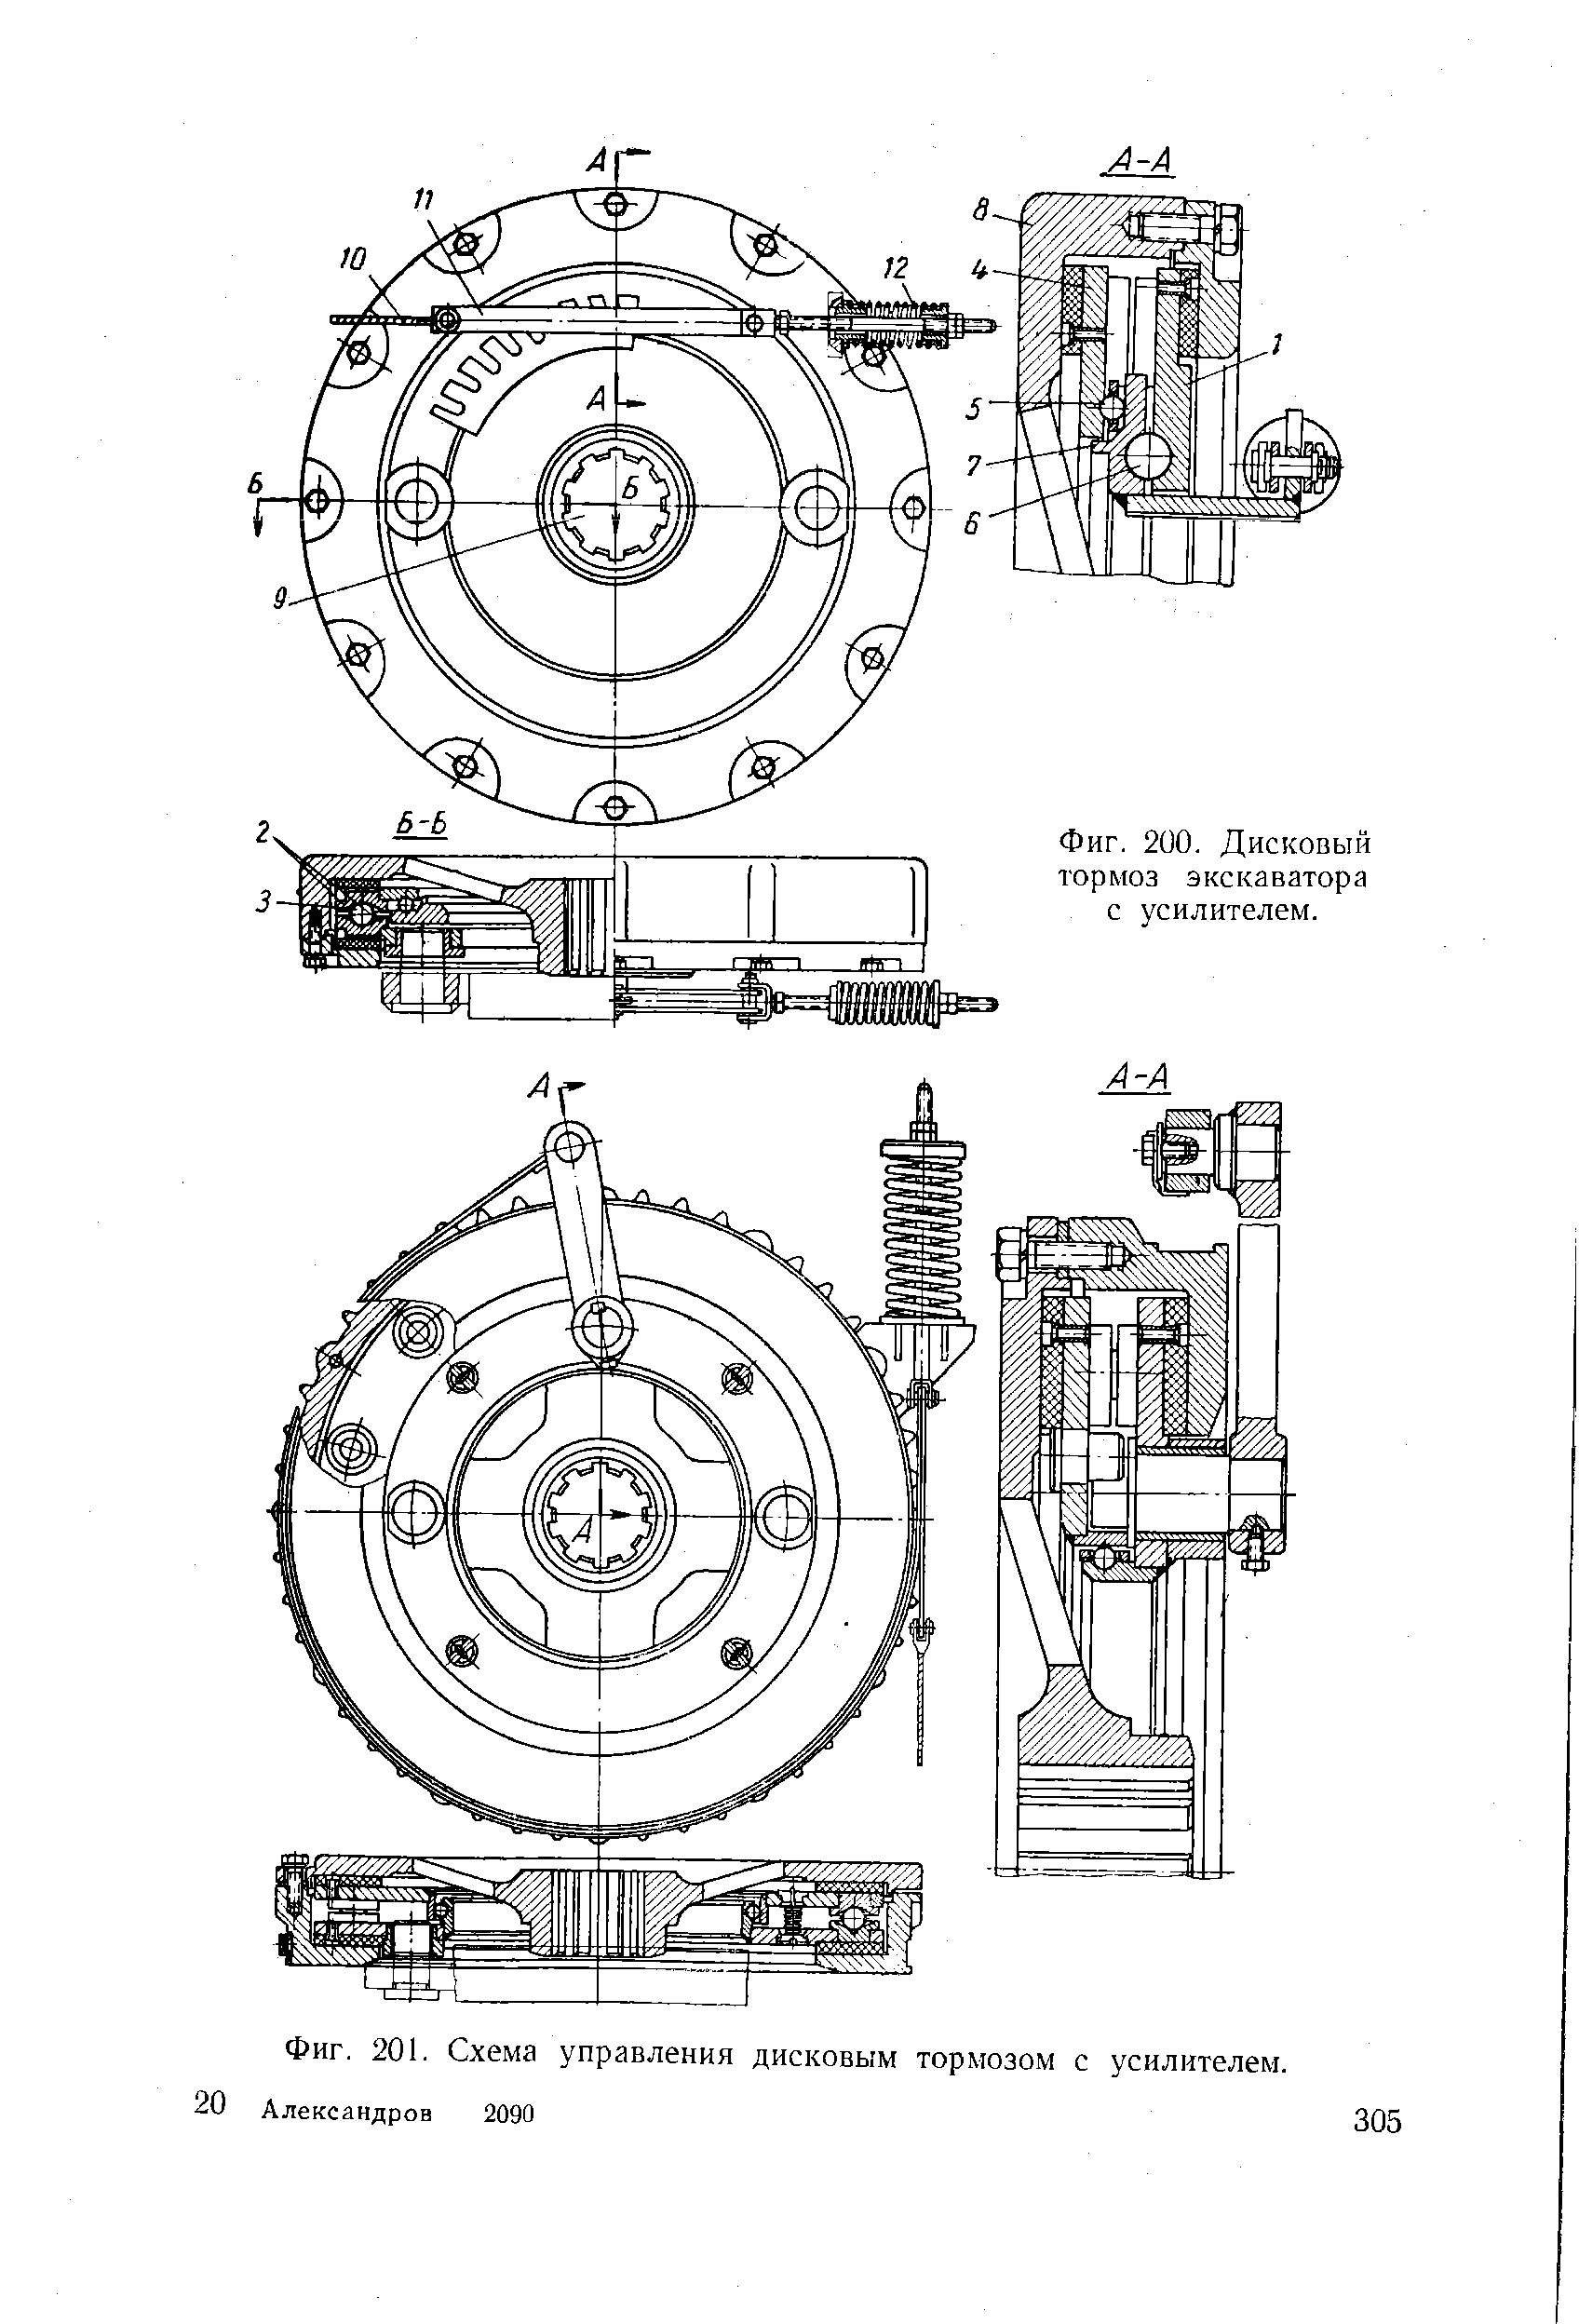 Фиг. 201. Схема управления дисковым тормозом с усилителем.
